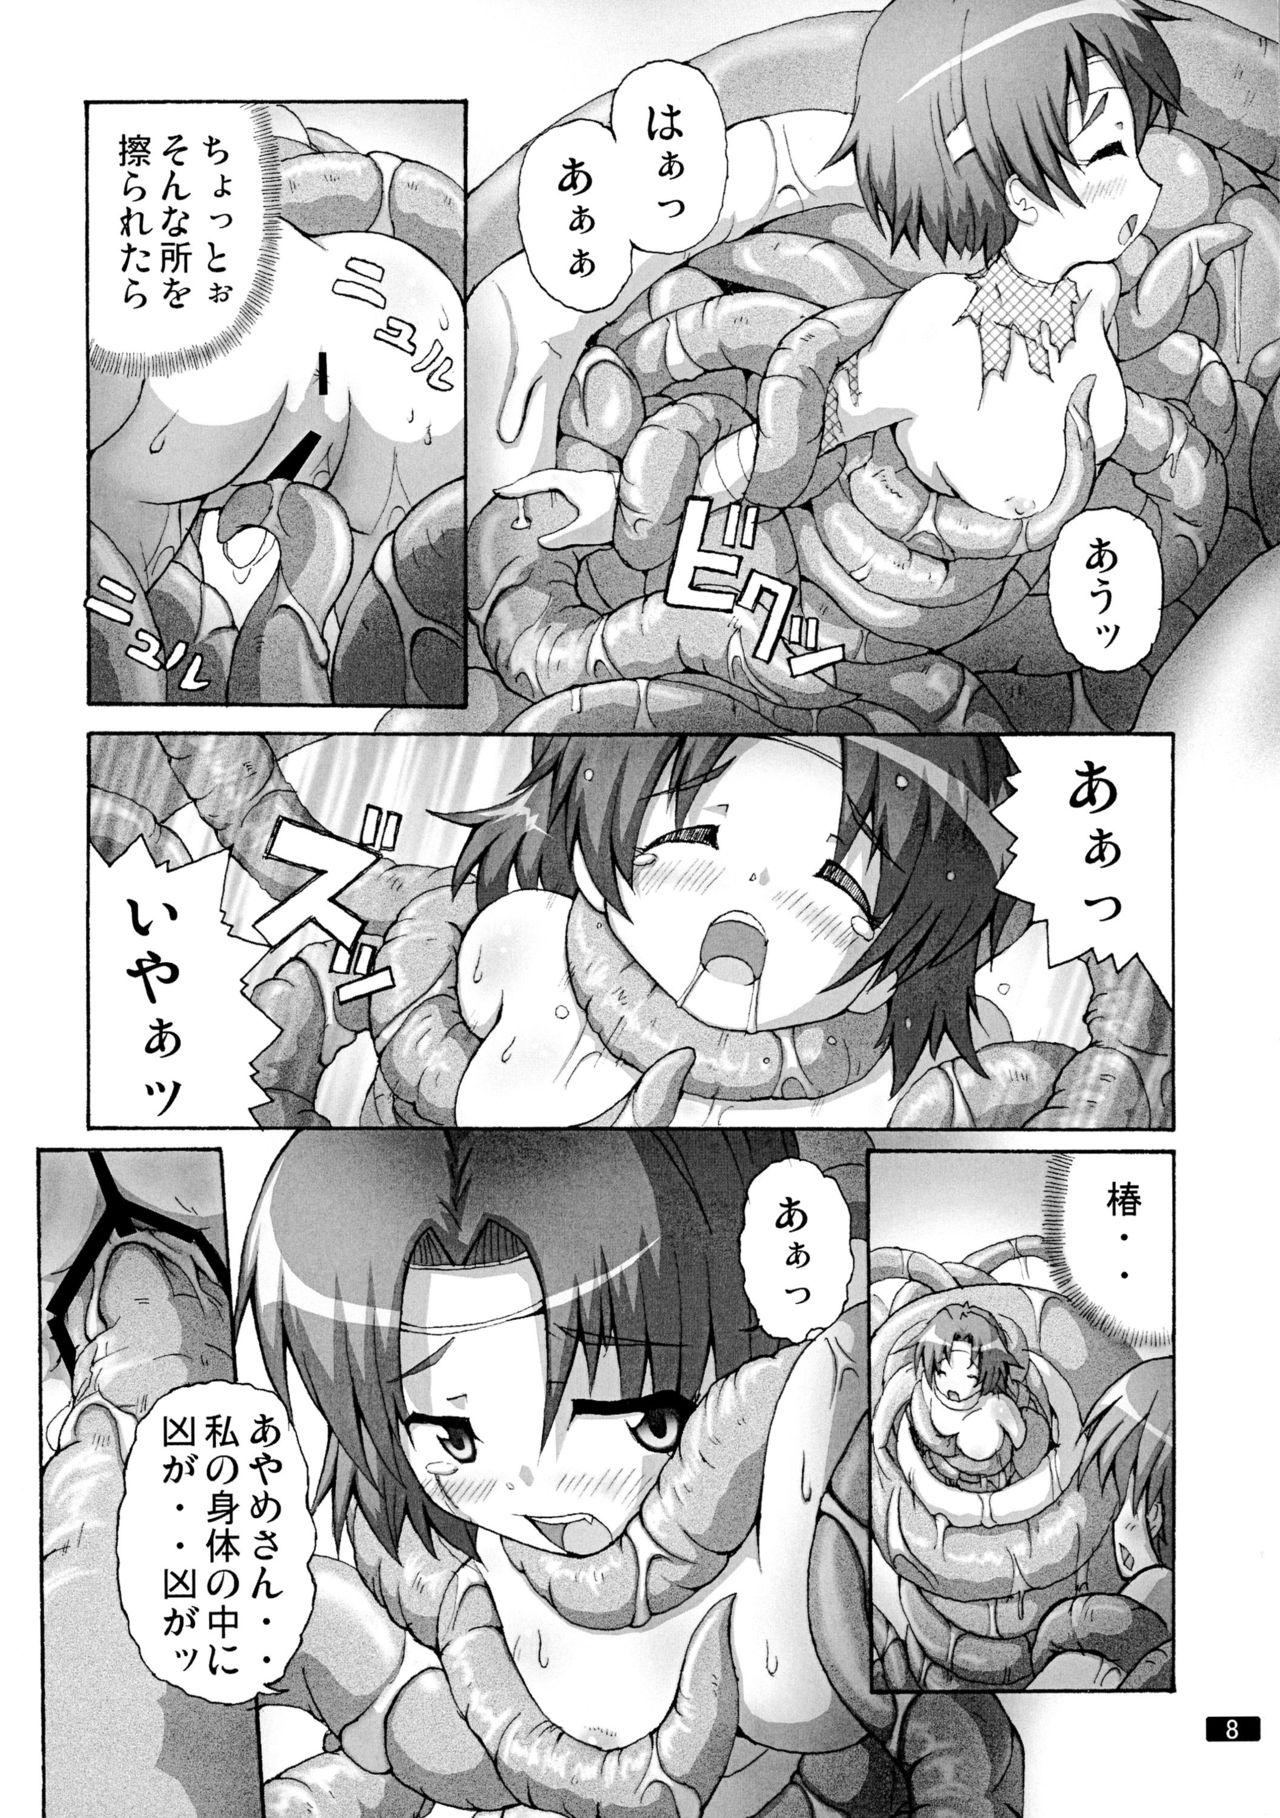 Clitoris Kaiun no Taimashi Nozomi 5 1/ 2 Brunette - Page 8